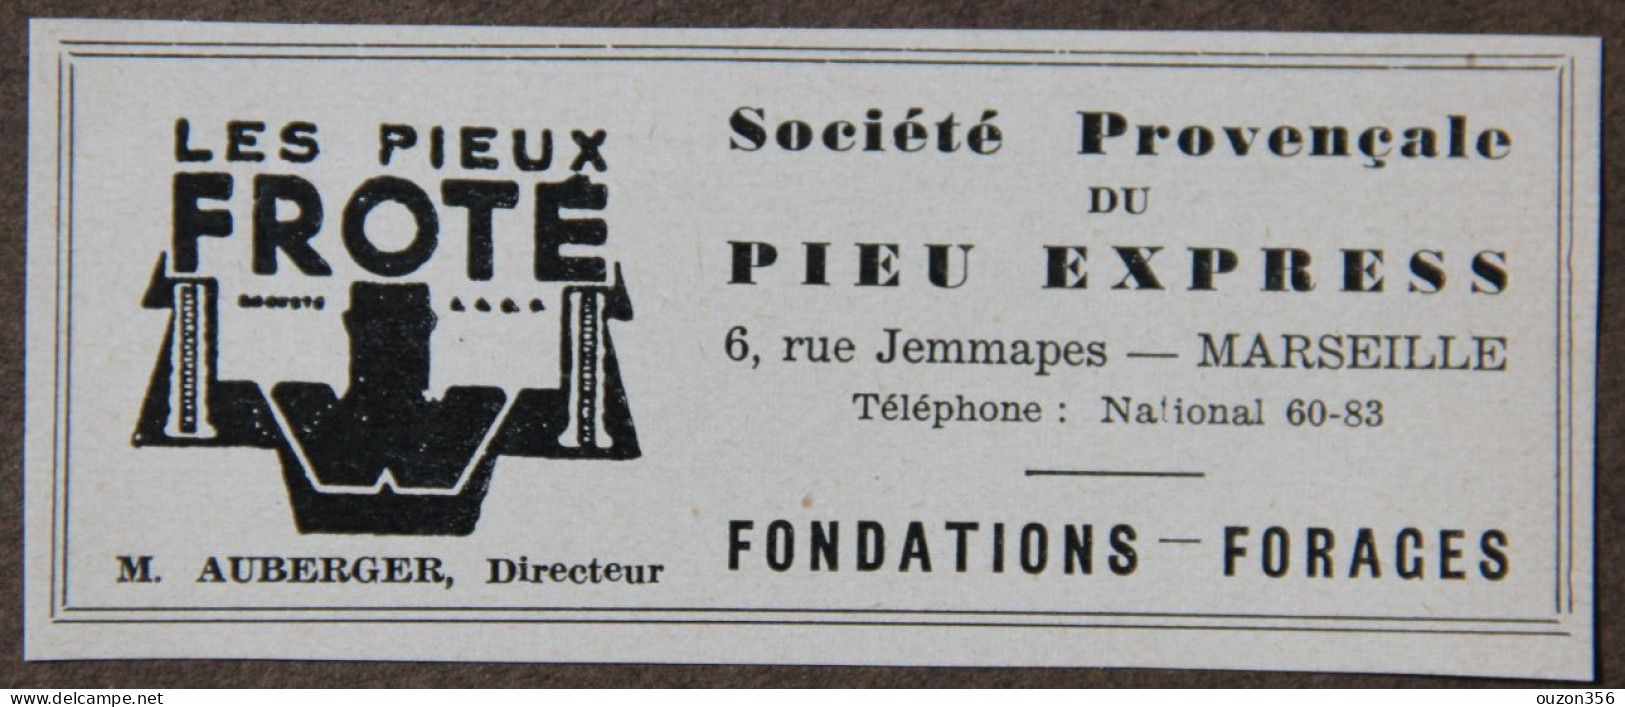 Publicité, Sté Provençale Du Pieu Express, Les Pieux Froté, Fondations, Forages, Marseille, 1951 - Reclame